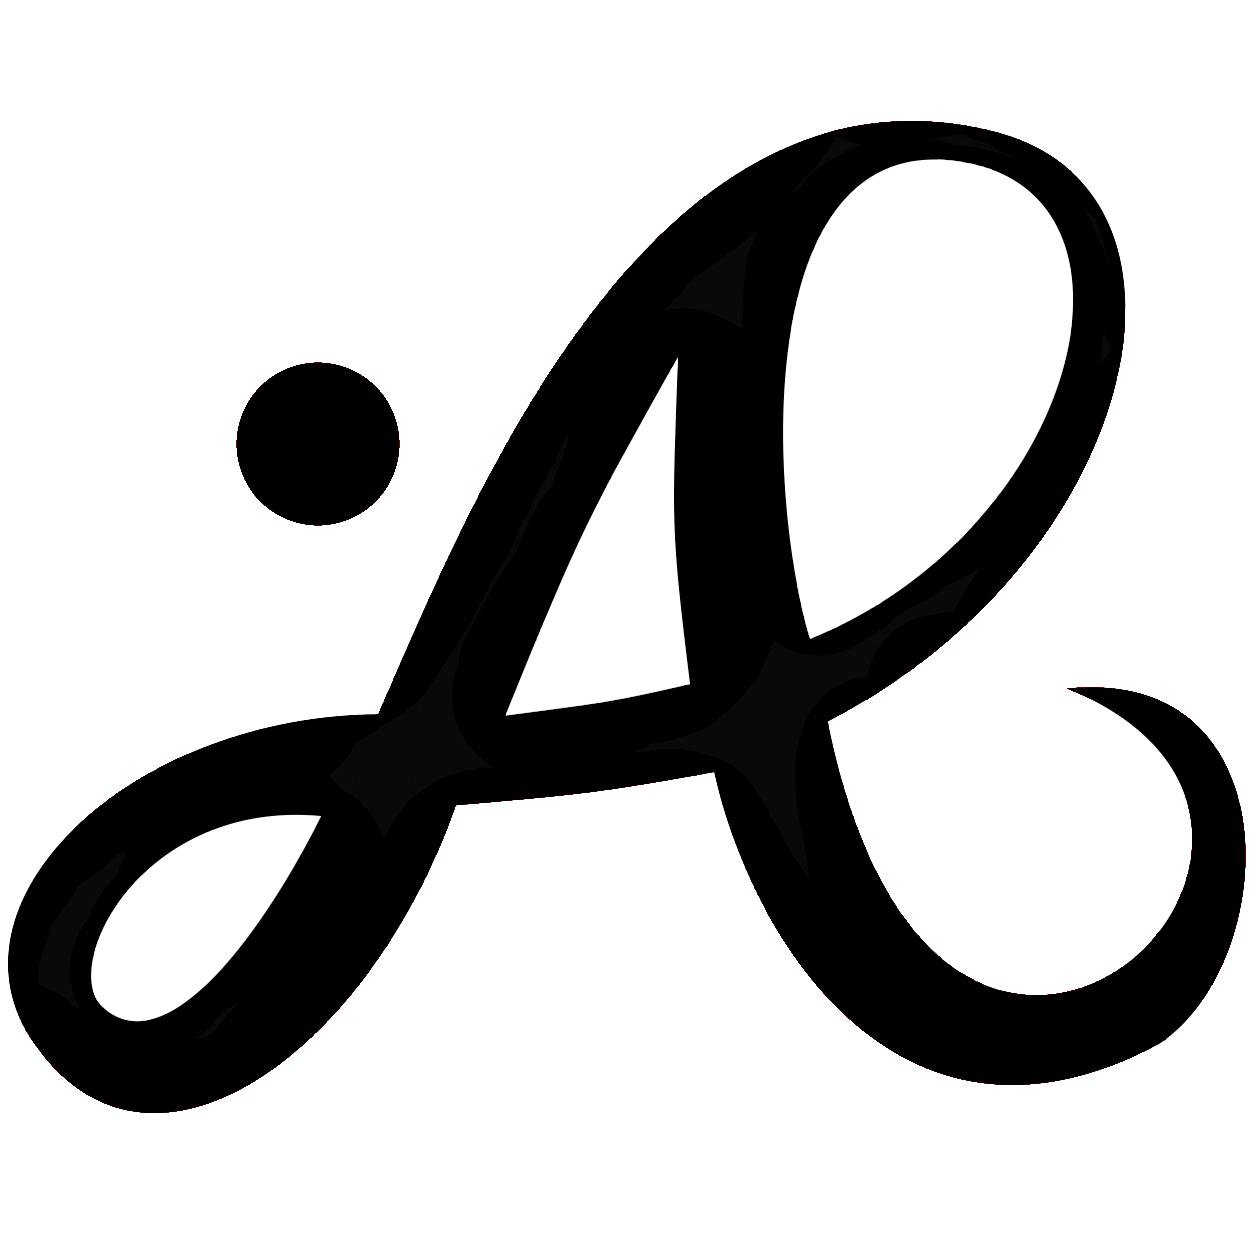 Affigliati Enzo logo, just an A